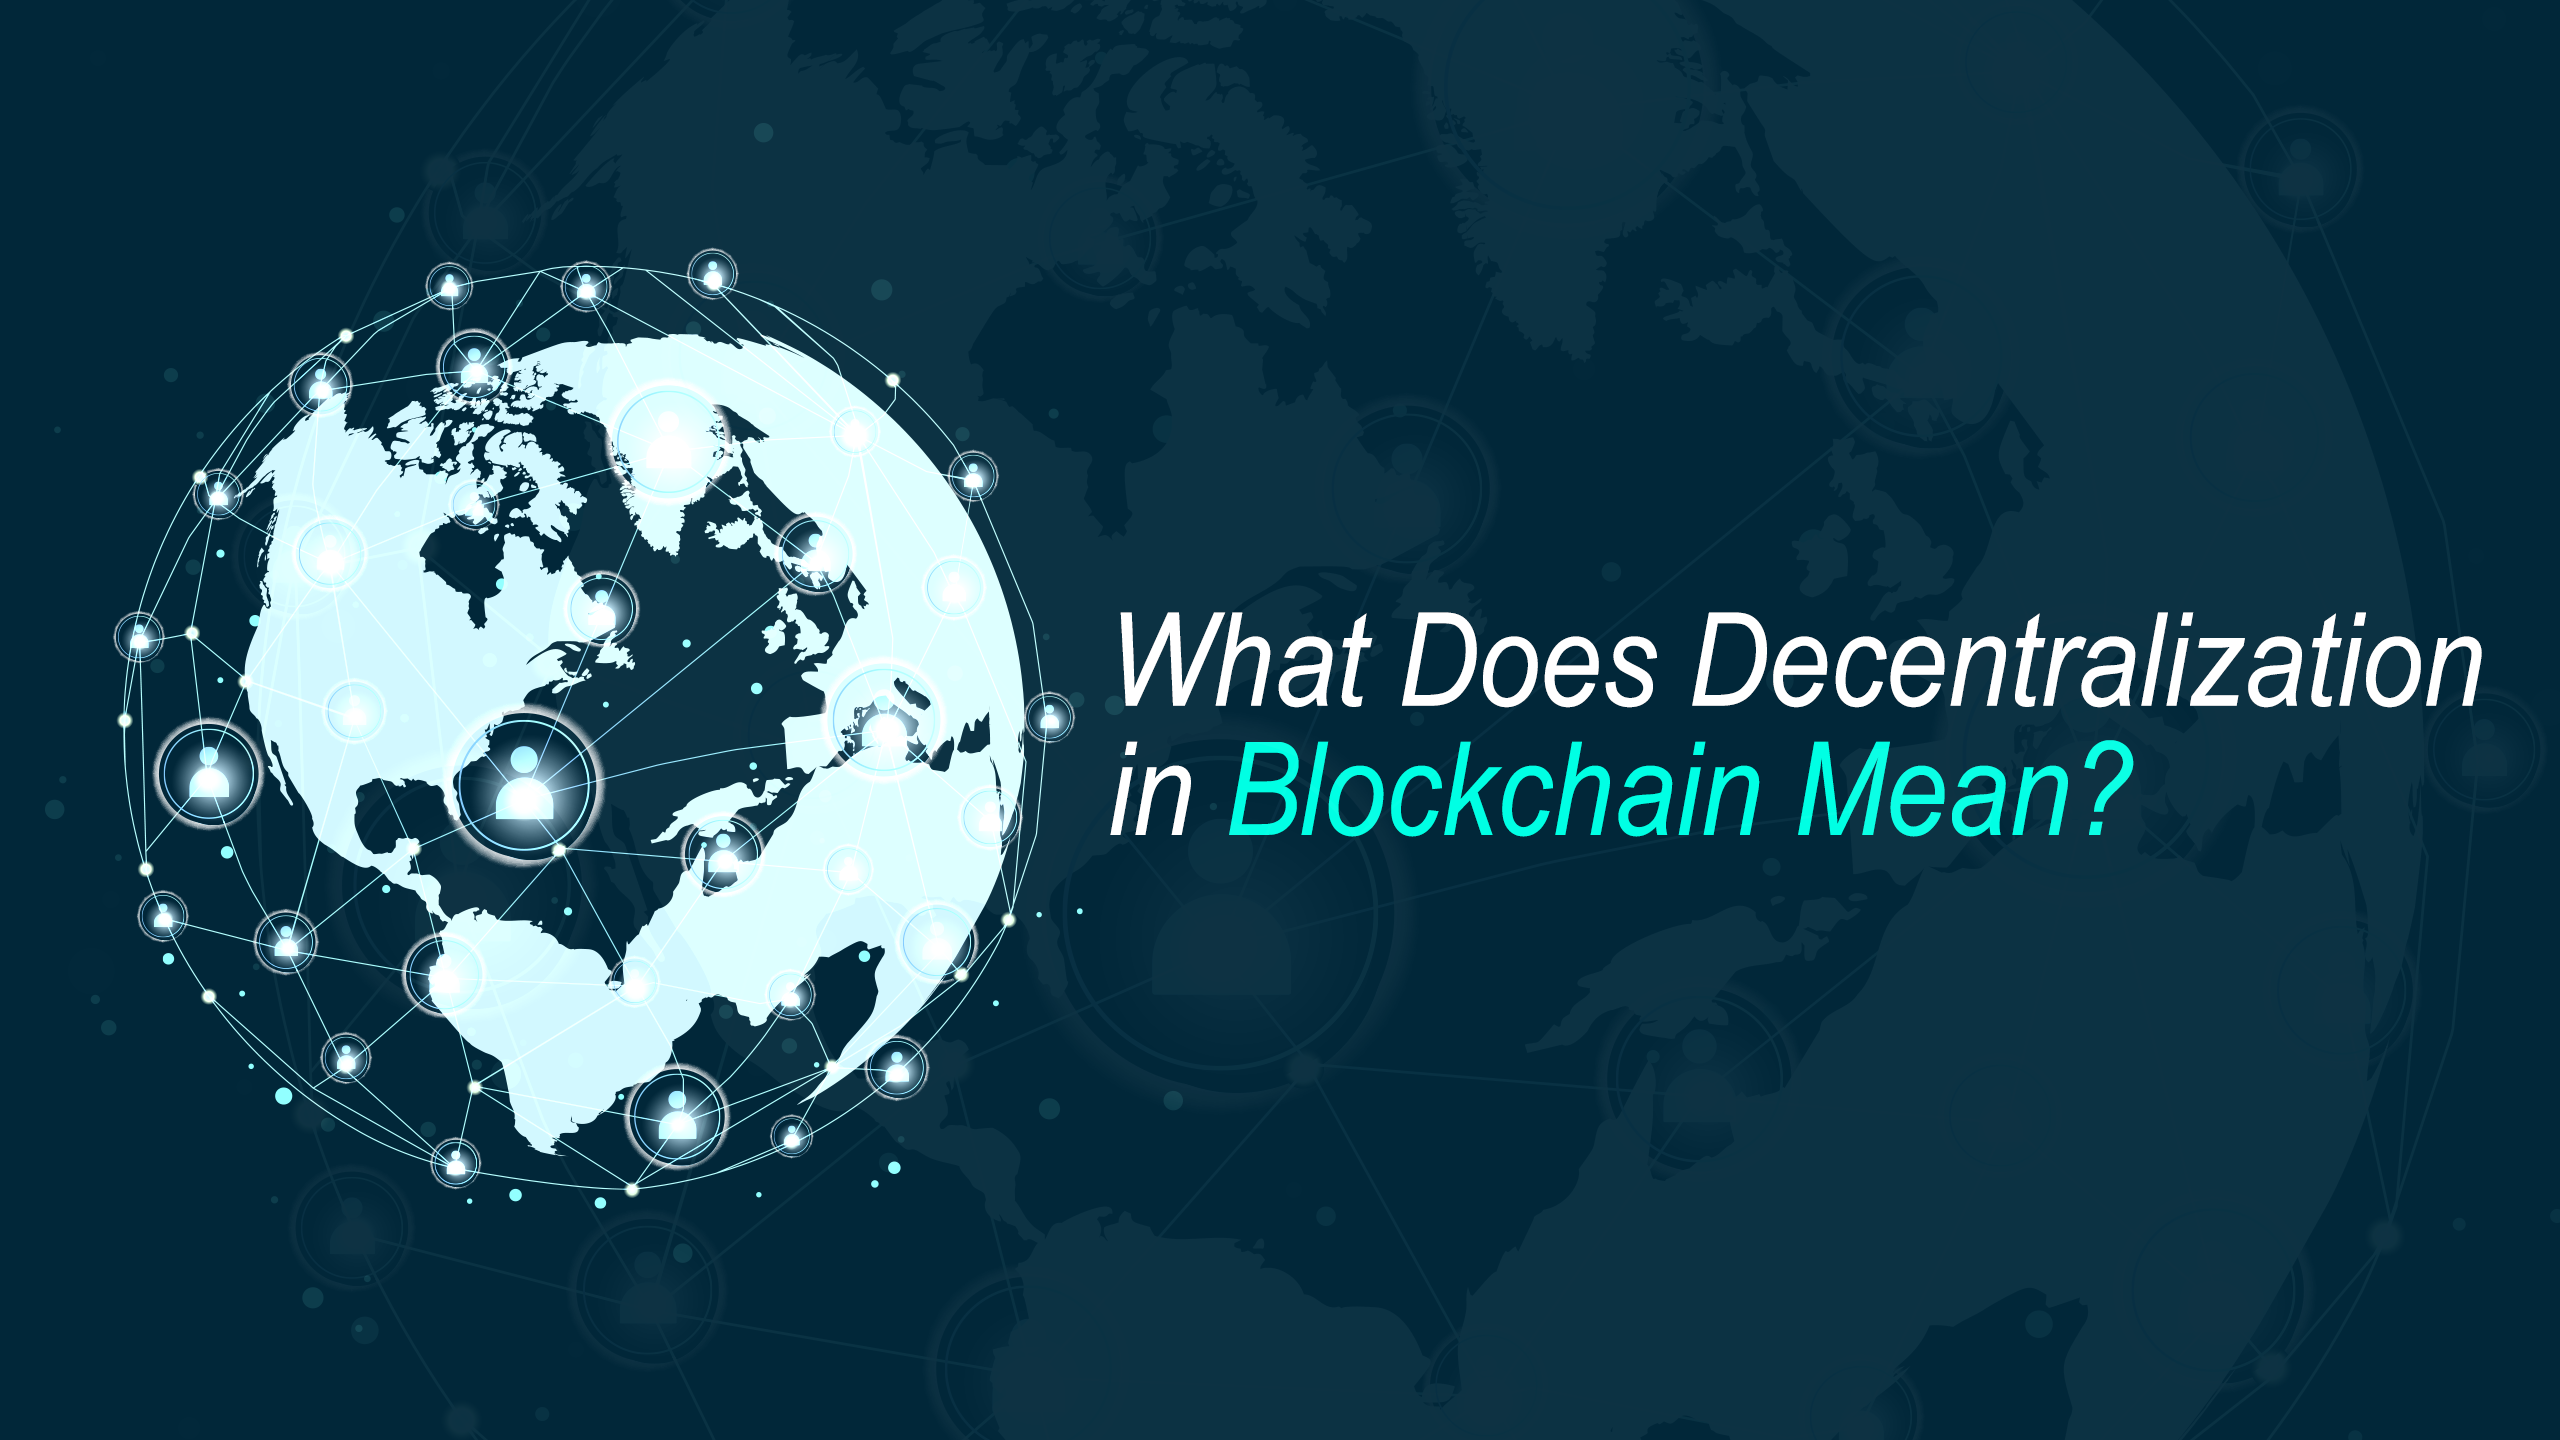 Decentralization in Blockchain